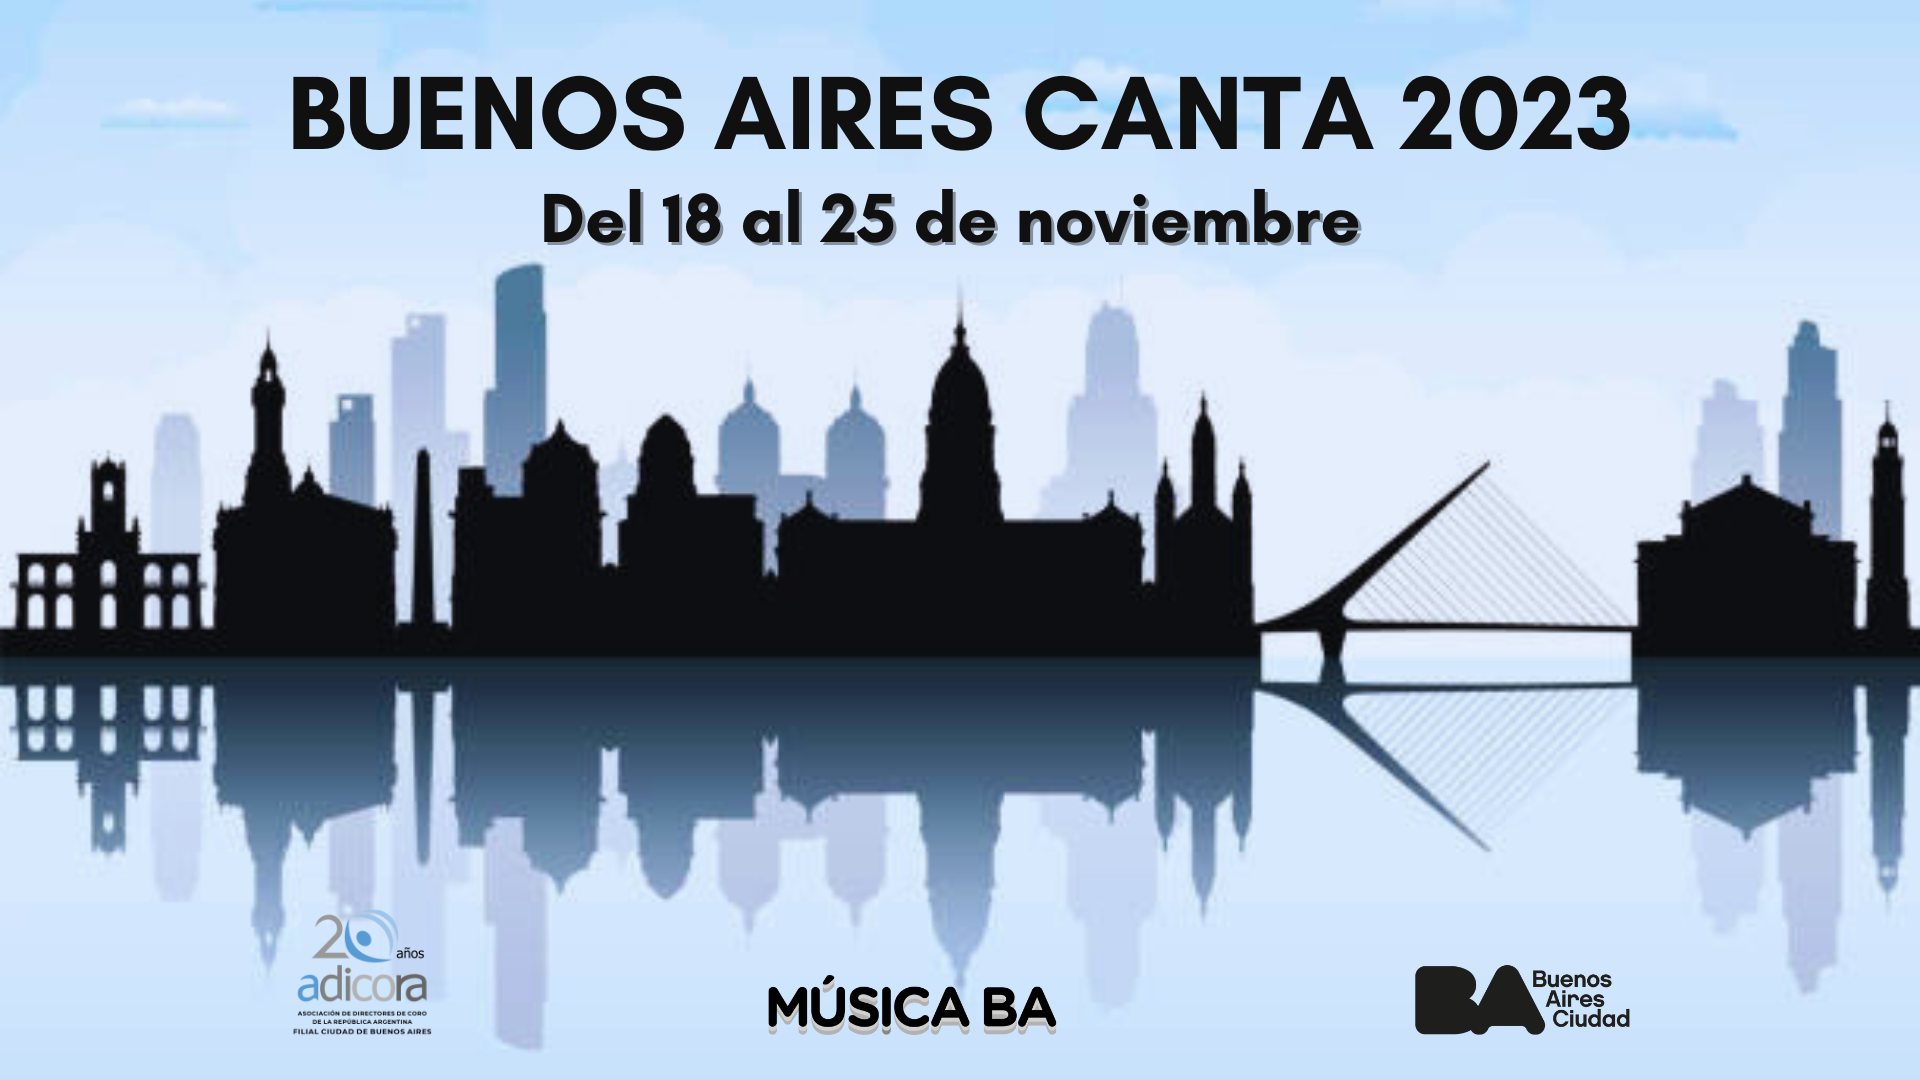 Buenos Aires Canta 2023